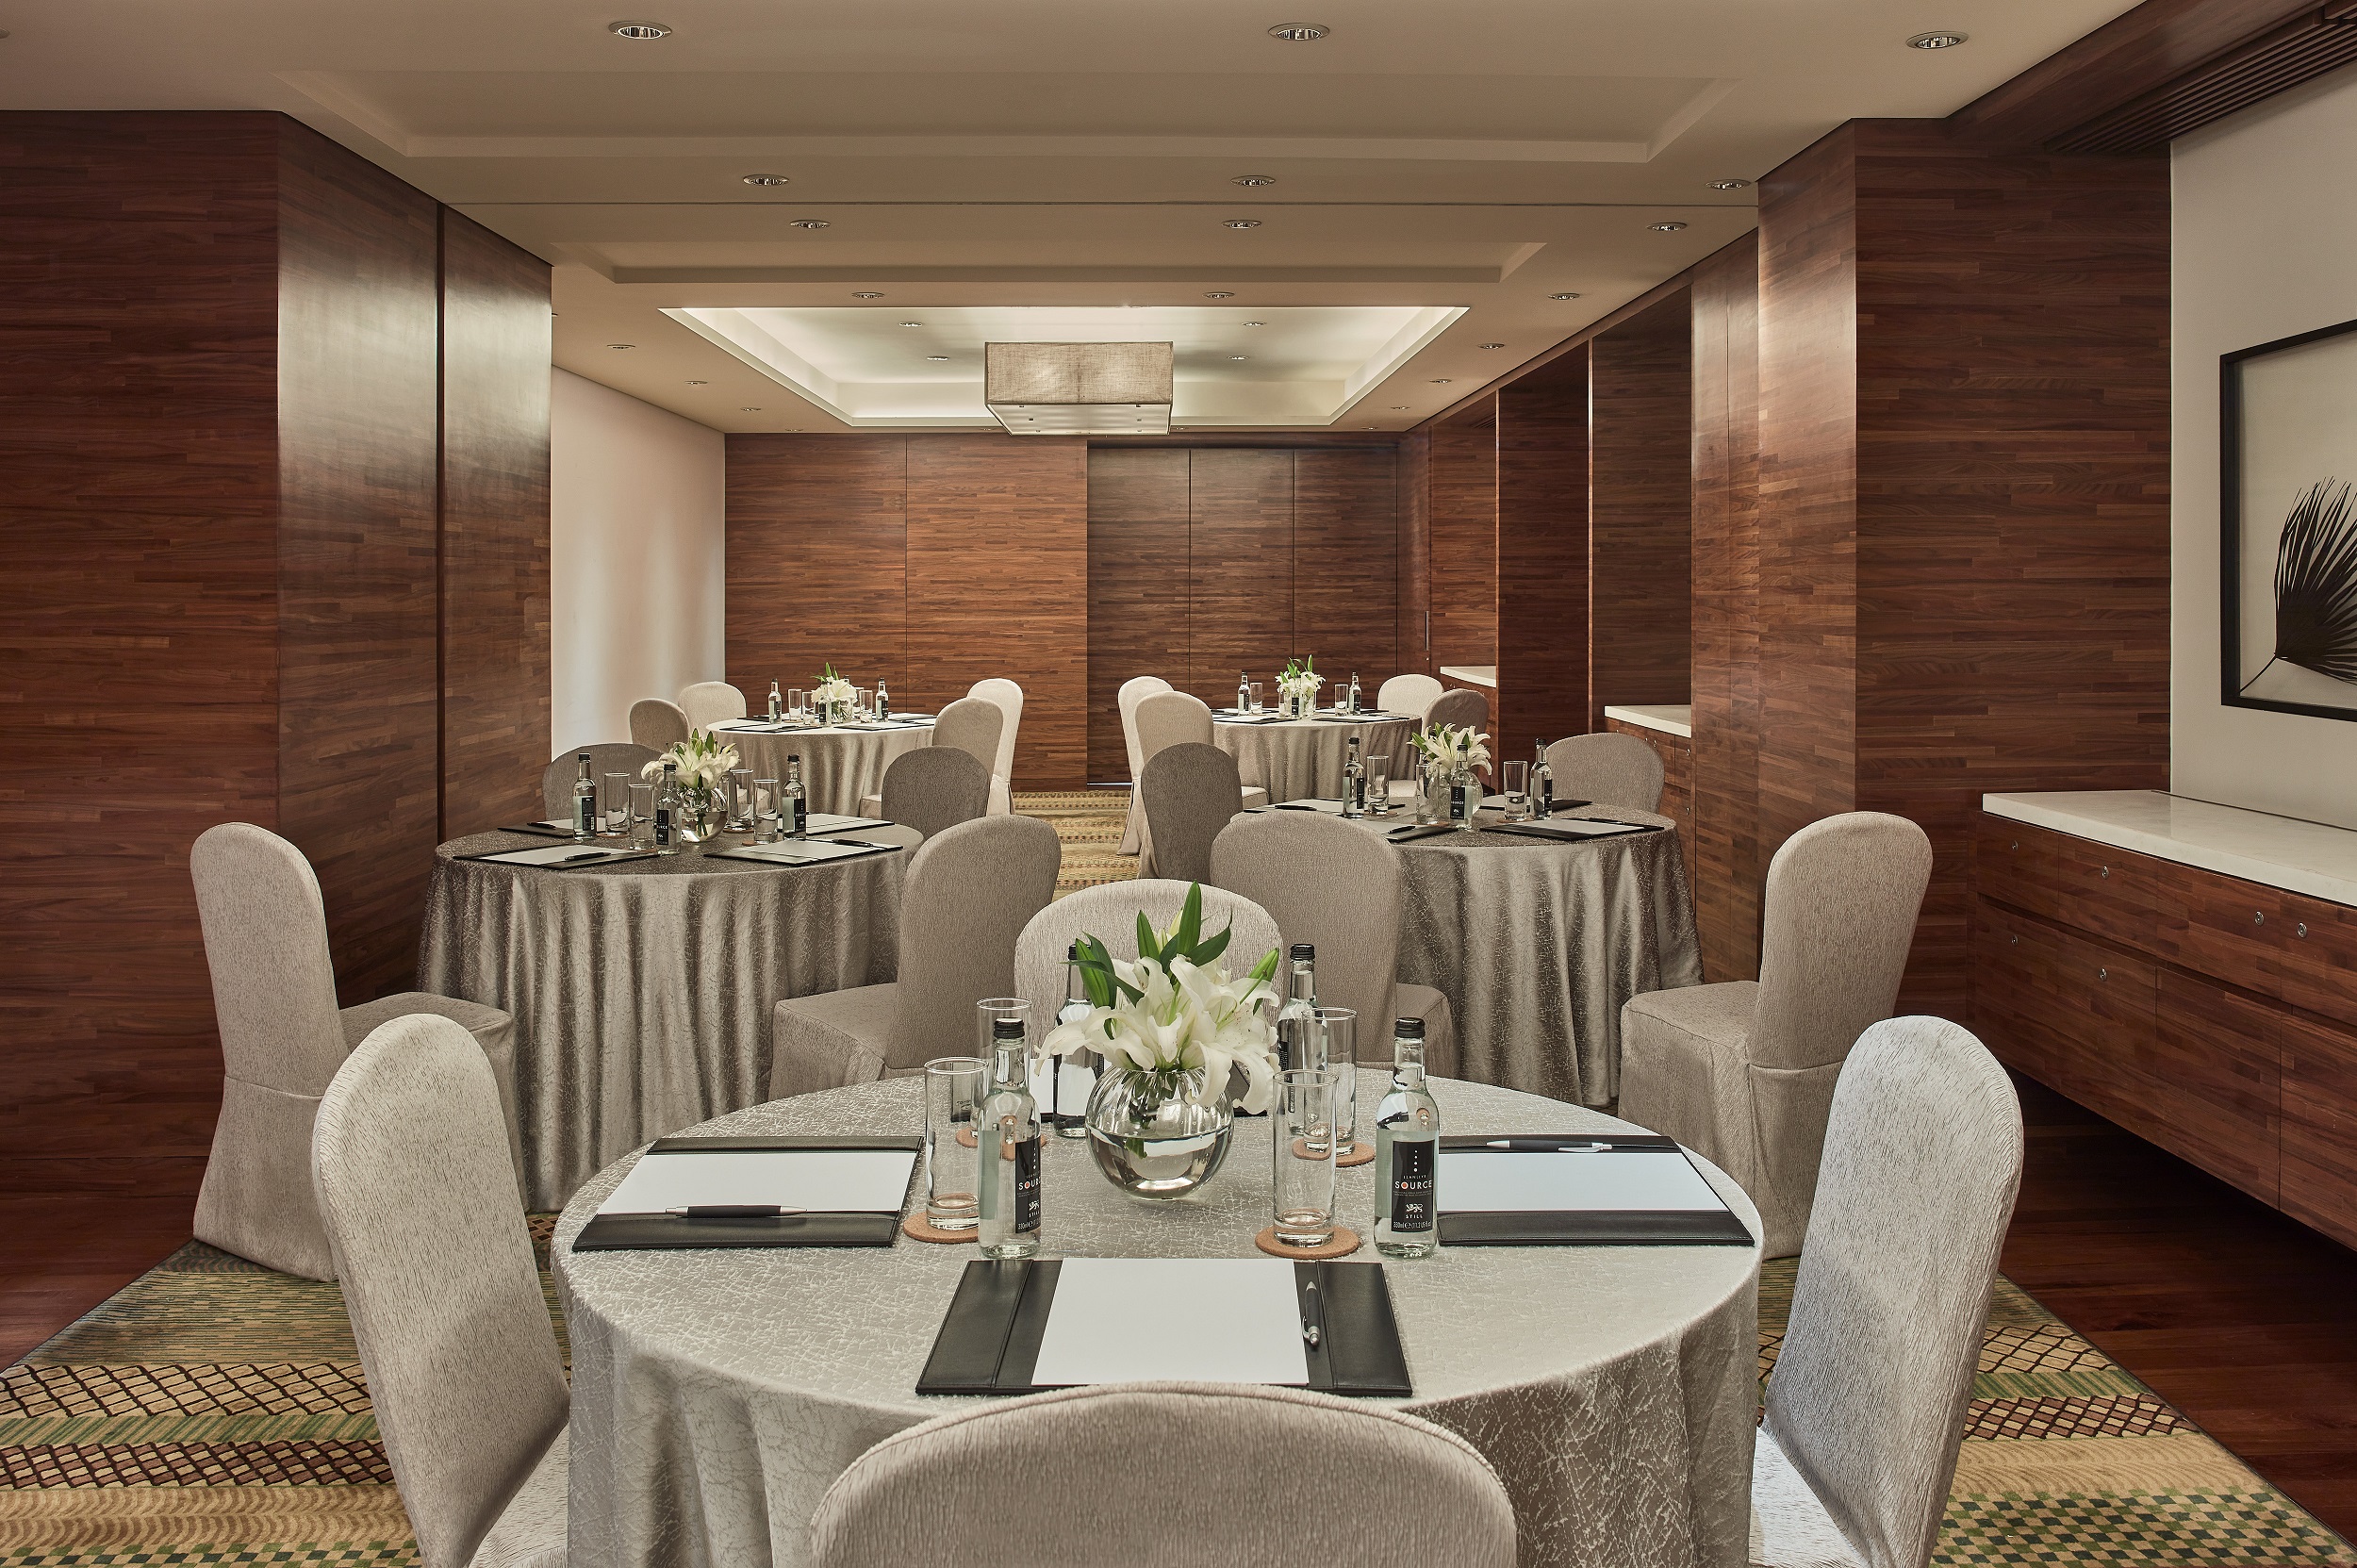 Hong Kong Hotel Meeting Rooms | Meeting Venue